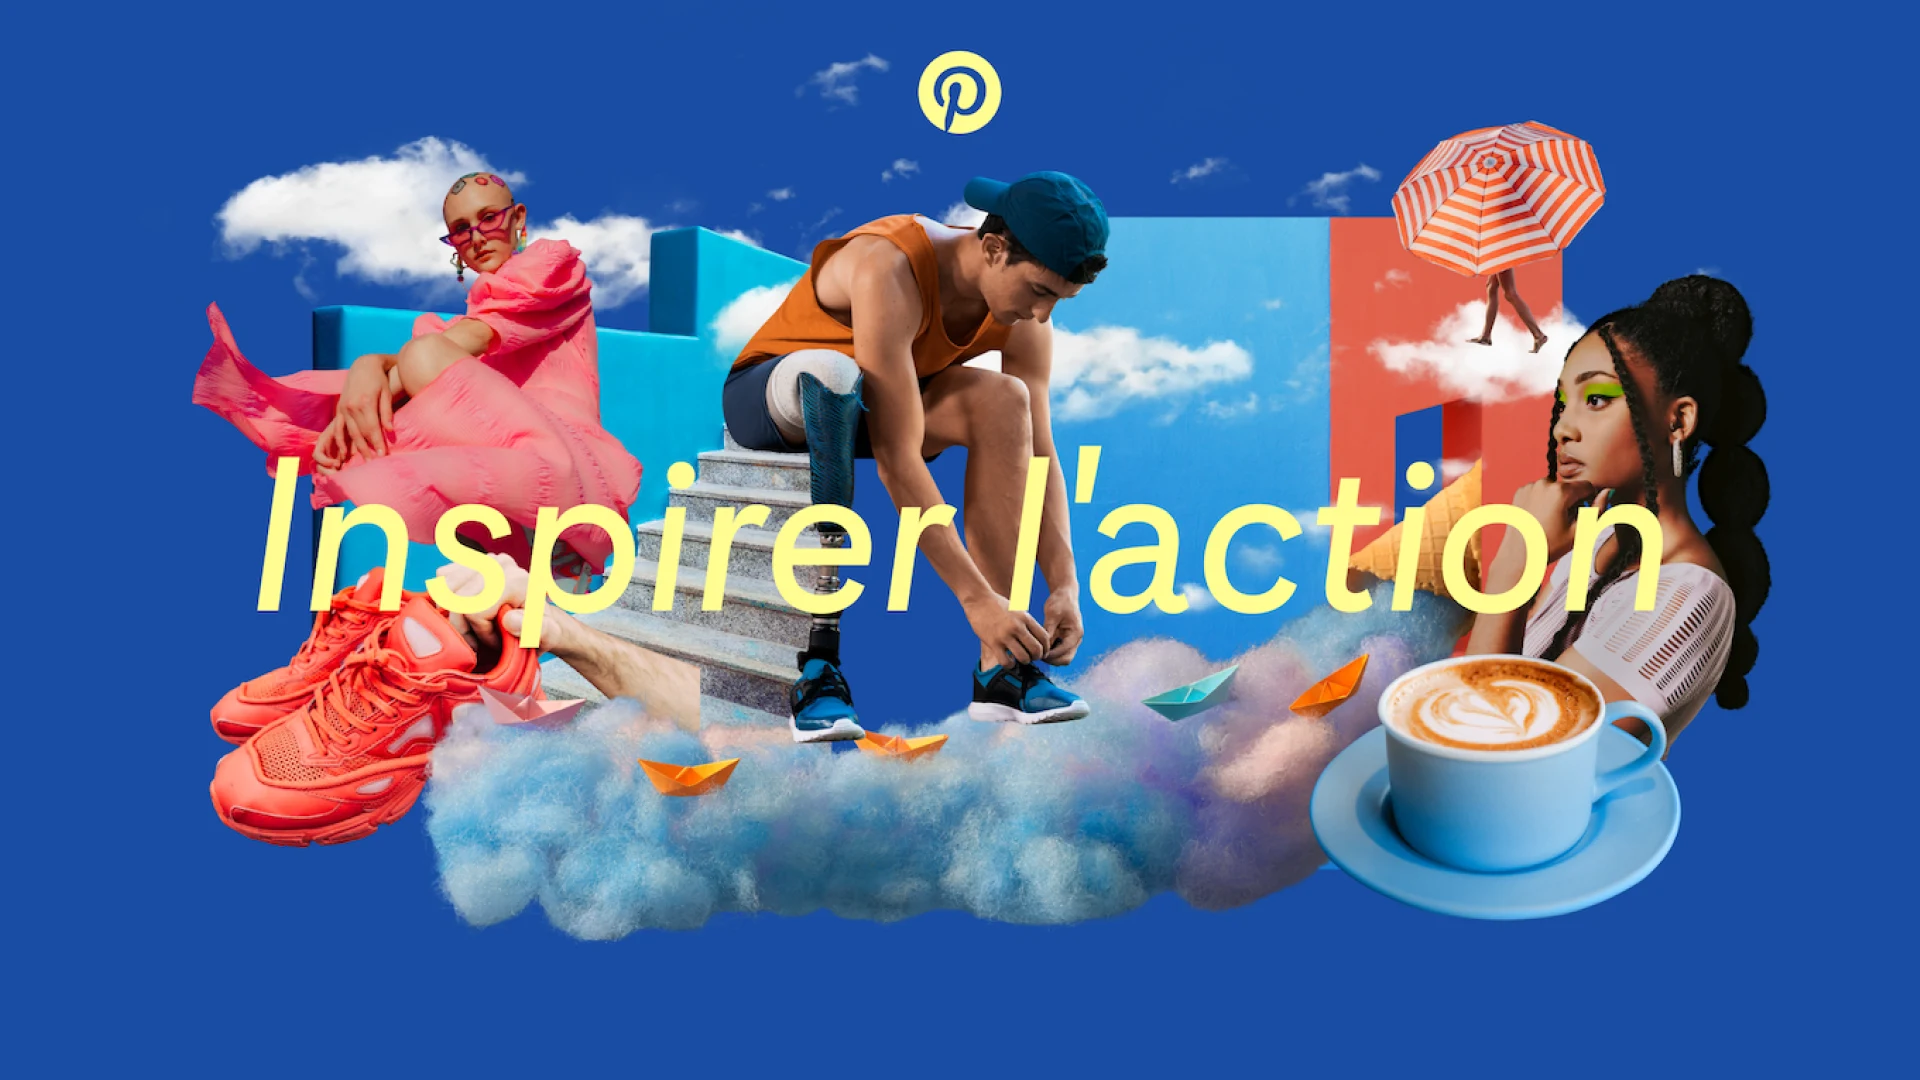 Mots « Inspirer l’action » superposés sur un collage d’images illustrant les tendances mode, beauté, cuisine et lifestyle inspirées de Pinterest